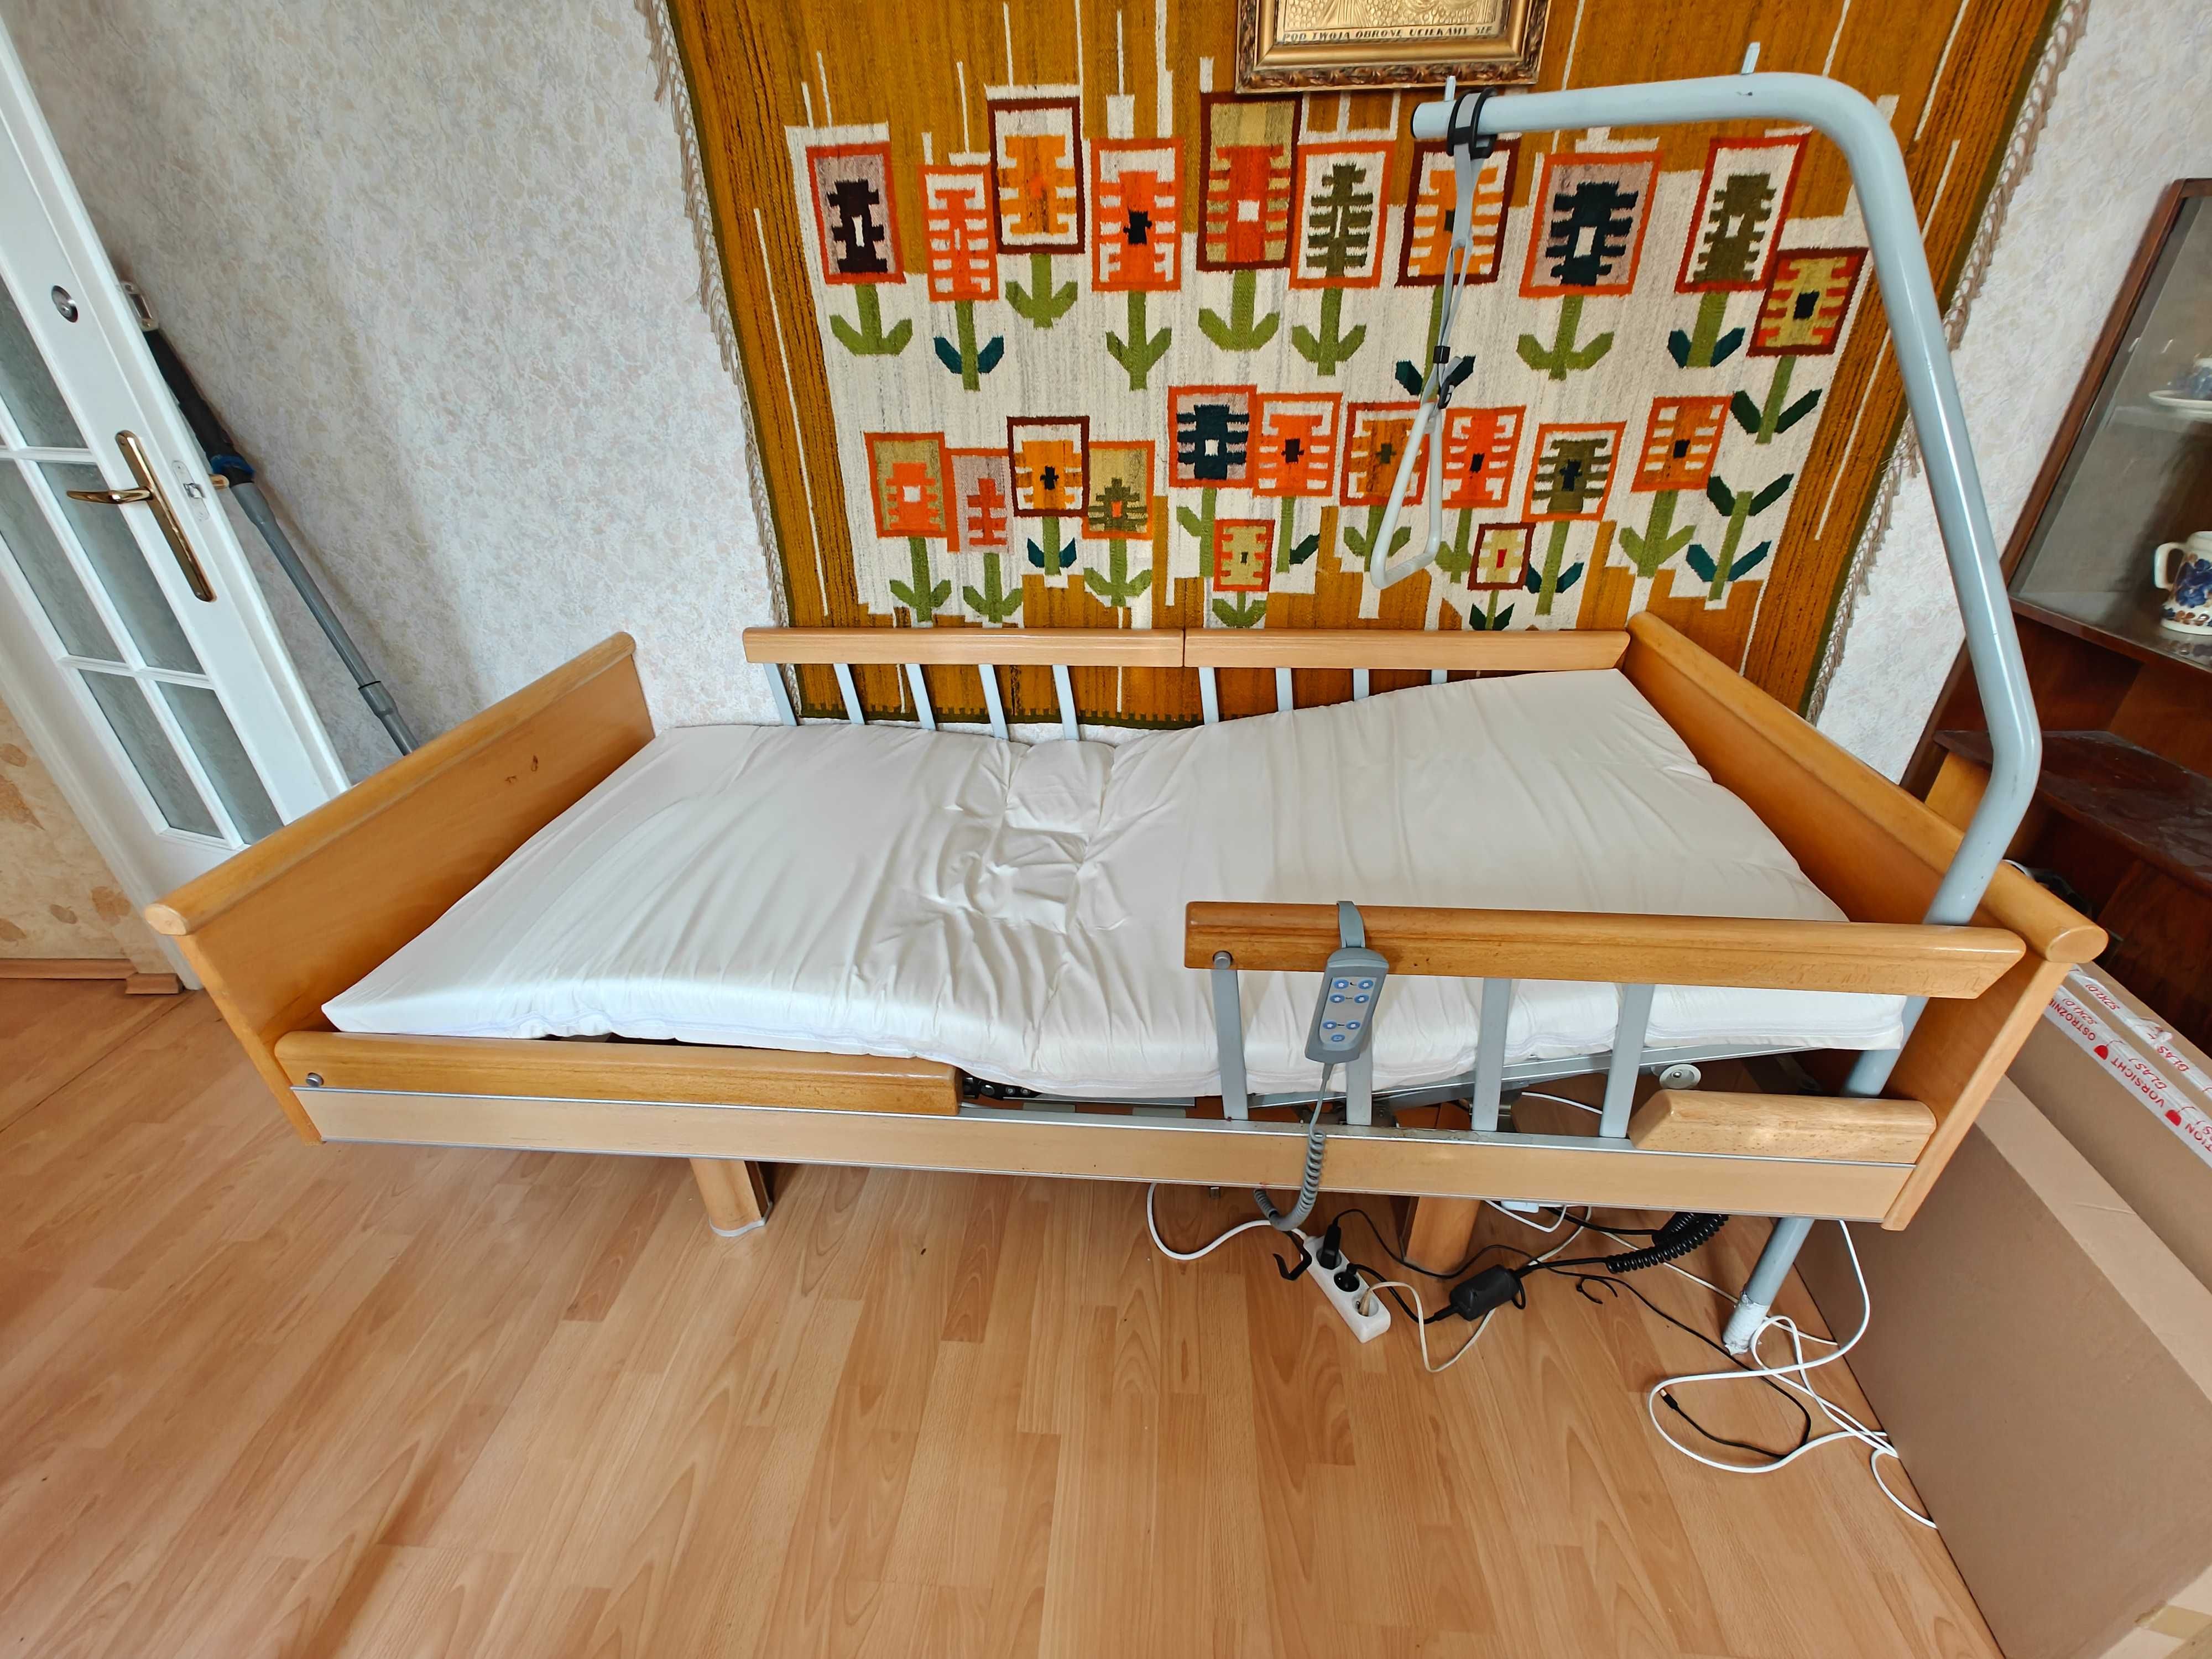 Łóżko rehabilitacyjne z nowym materacem, sterowane elektrycznie